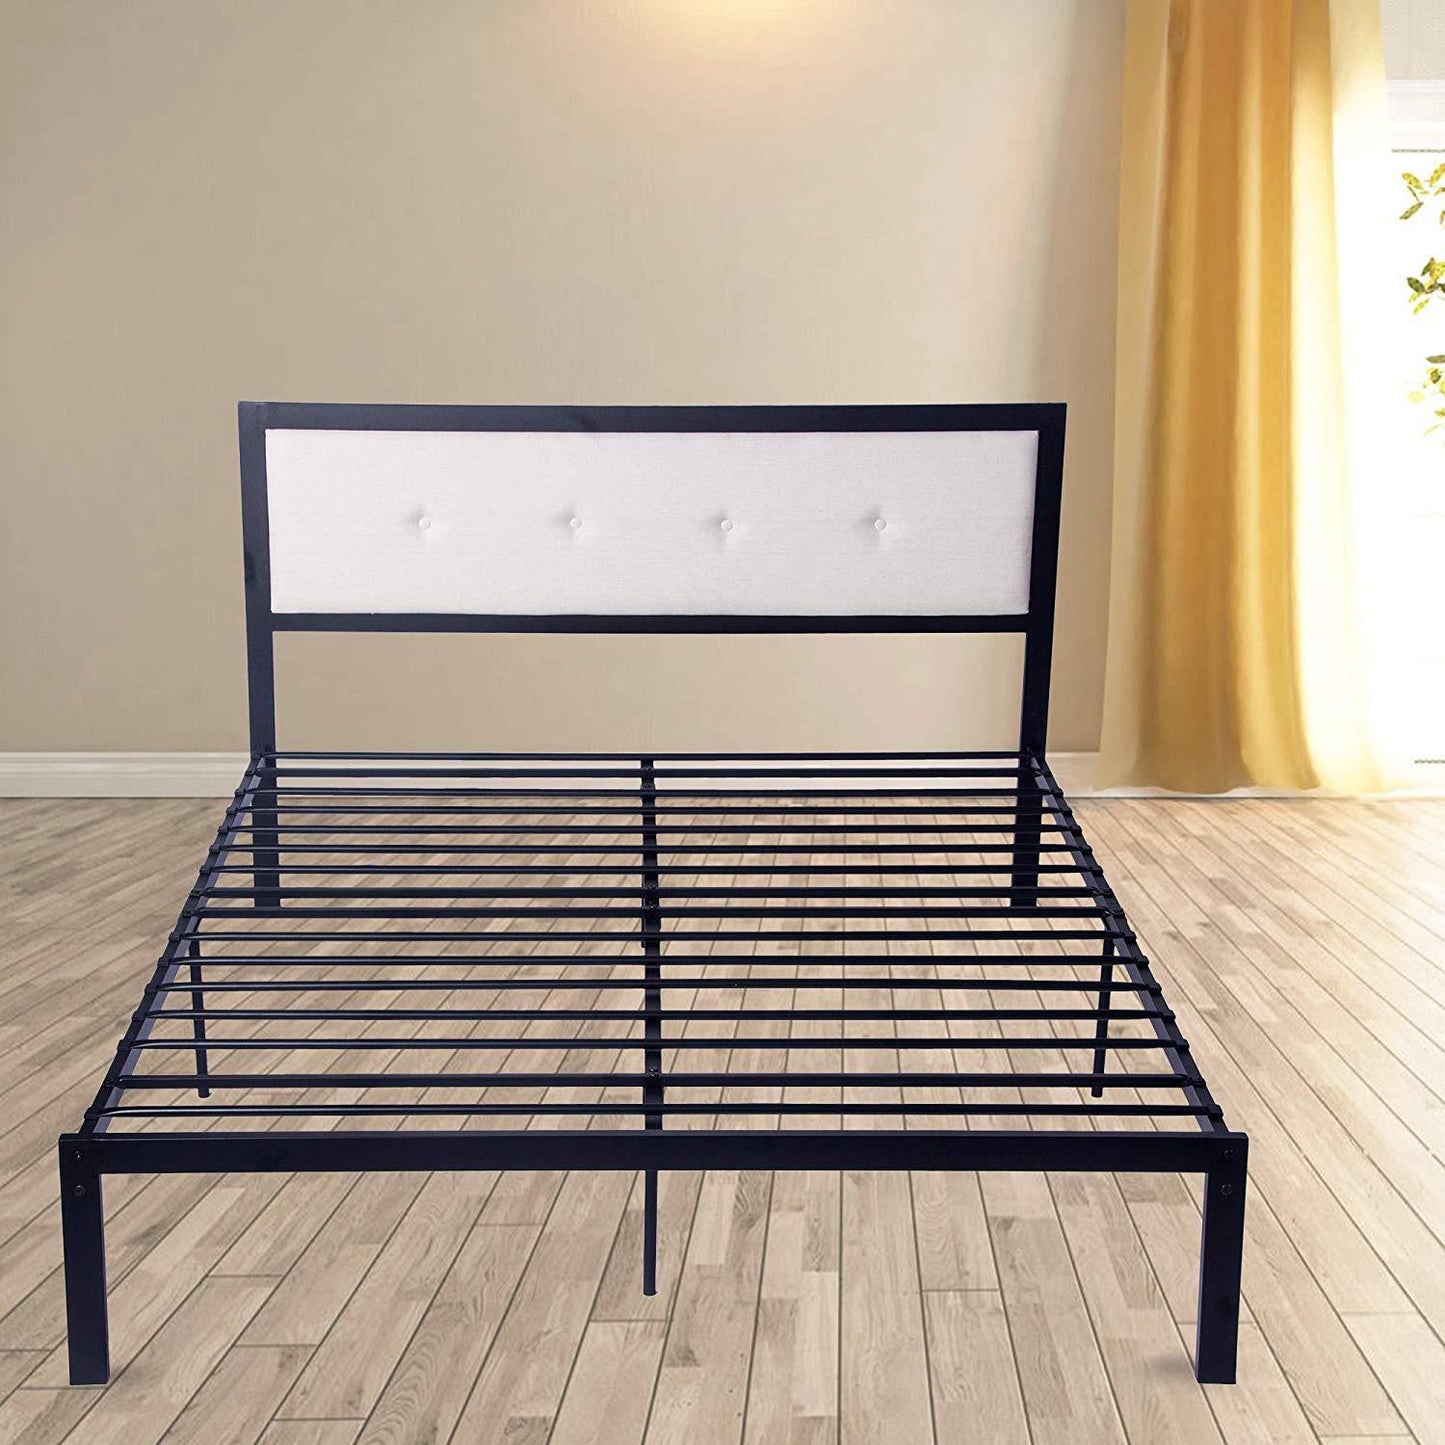 54" Modern Full Size Platform Bed with Black Metal Frame, Beige Headboard